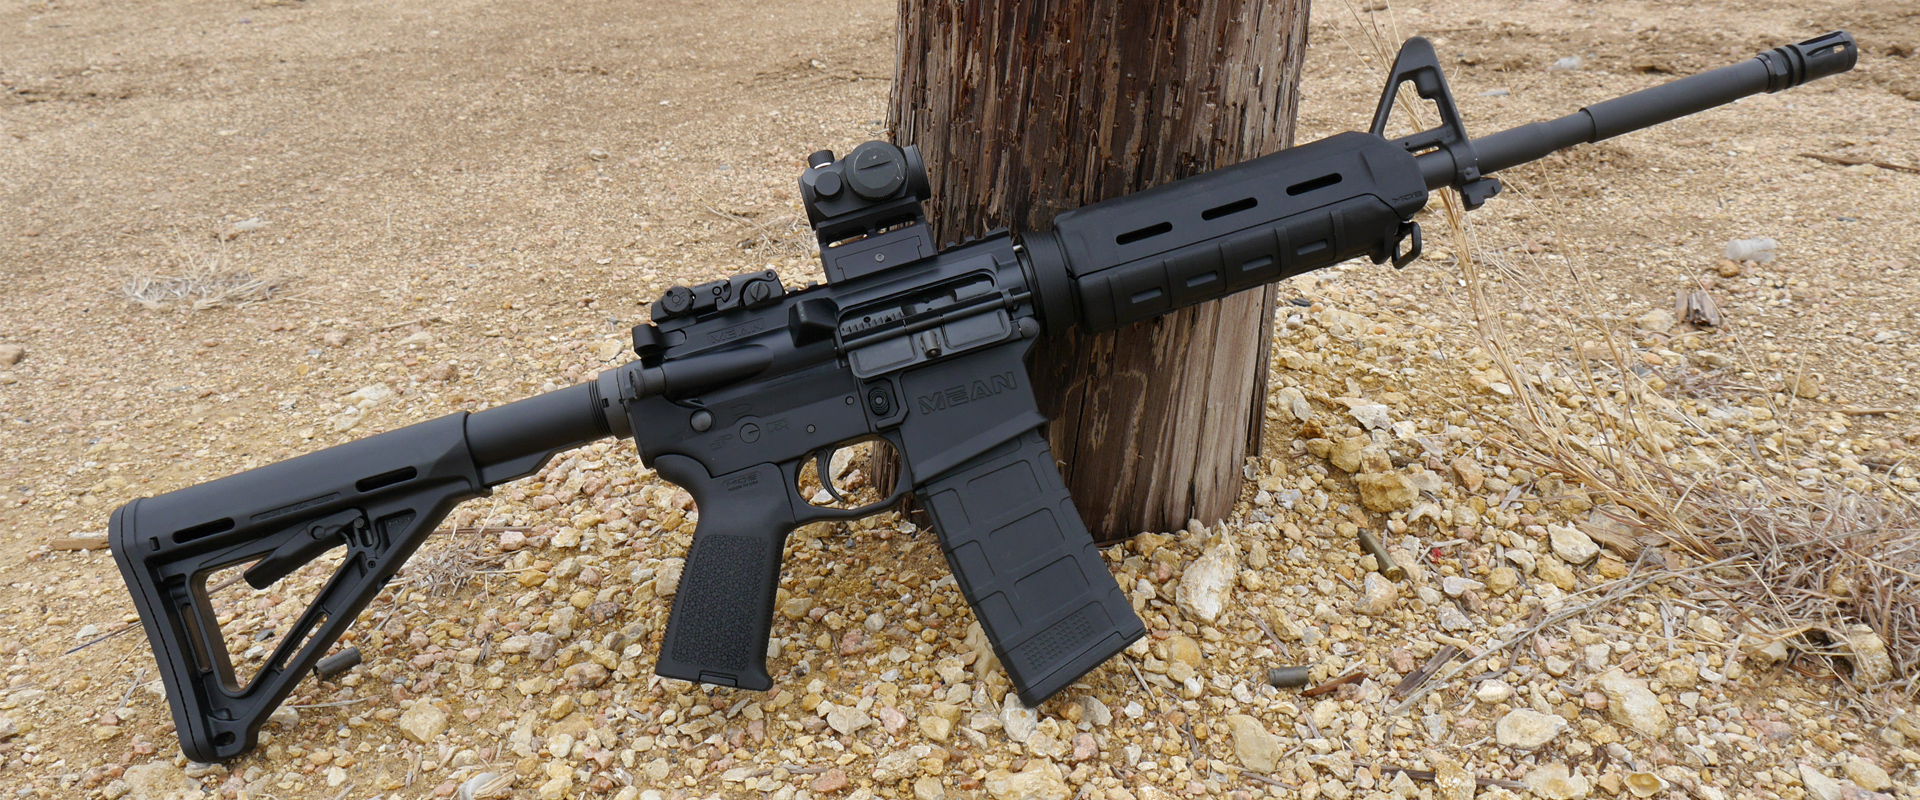 Ma Hybrid Ar 15 Rifle Mean Arms